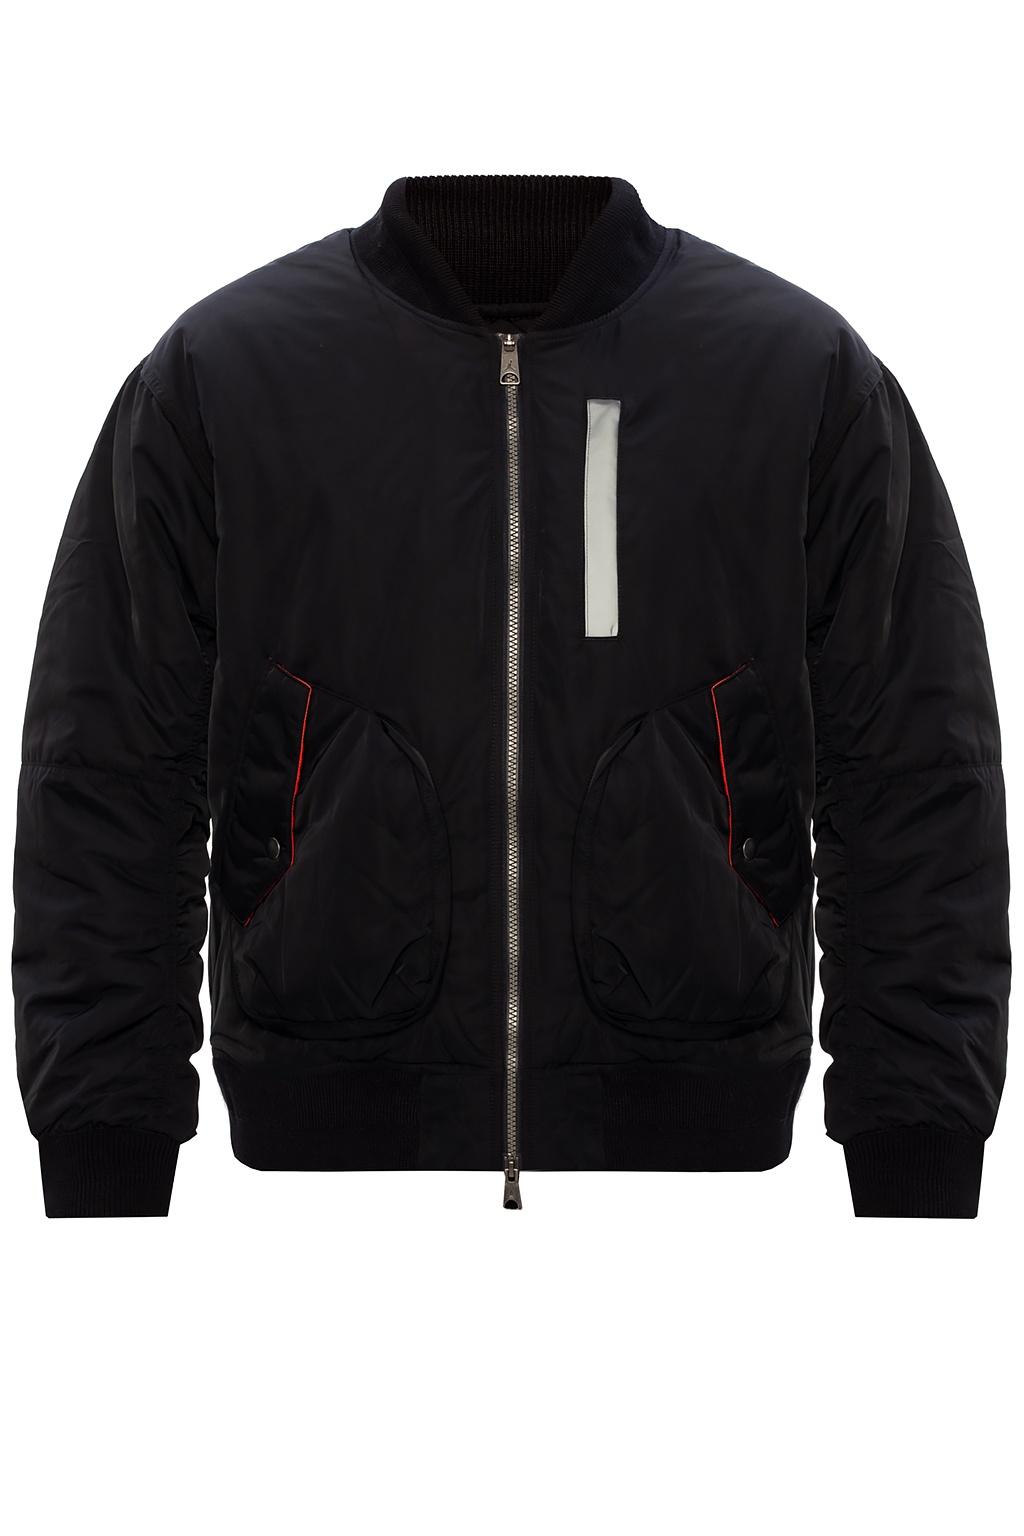 Bomber jacket with logo Nike - Vitkac 